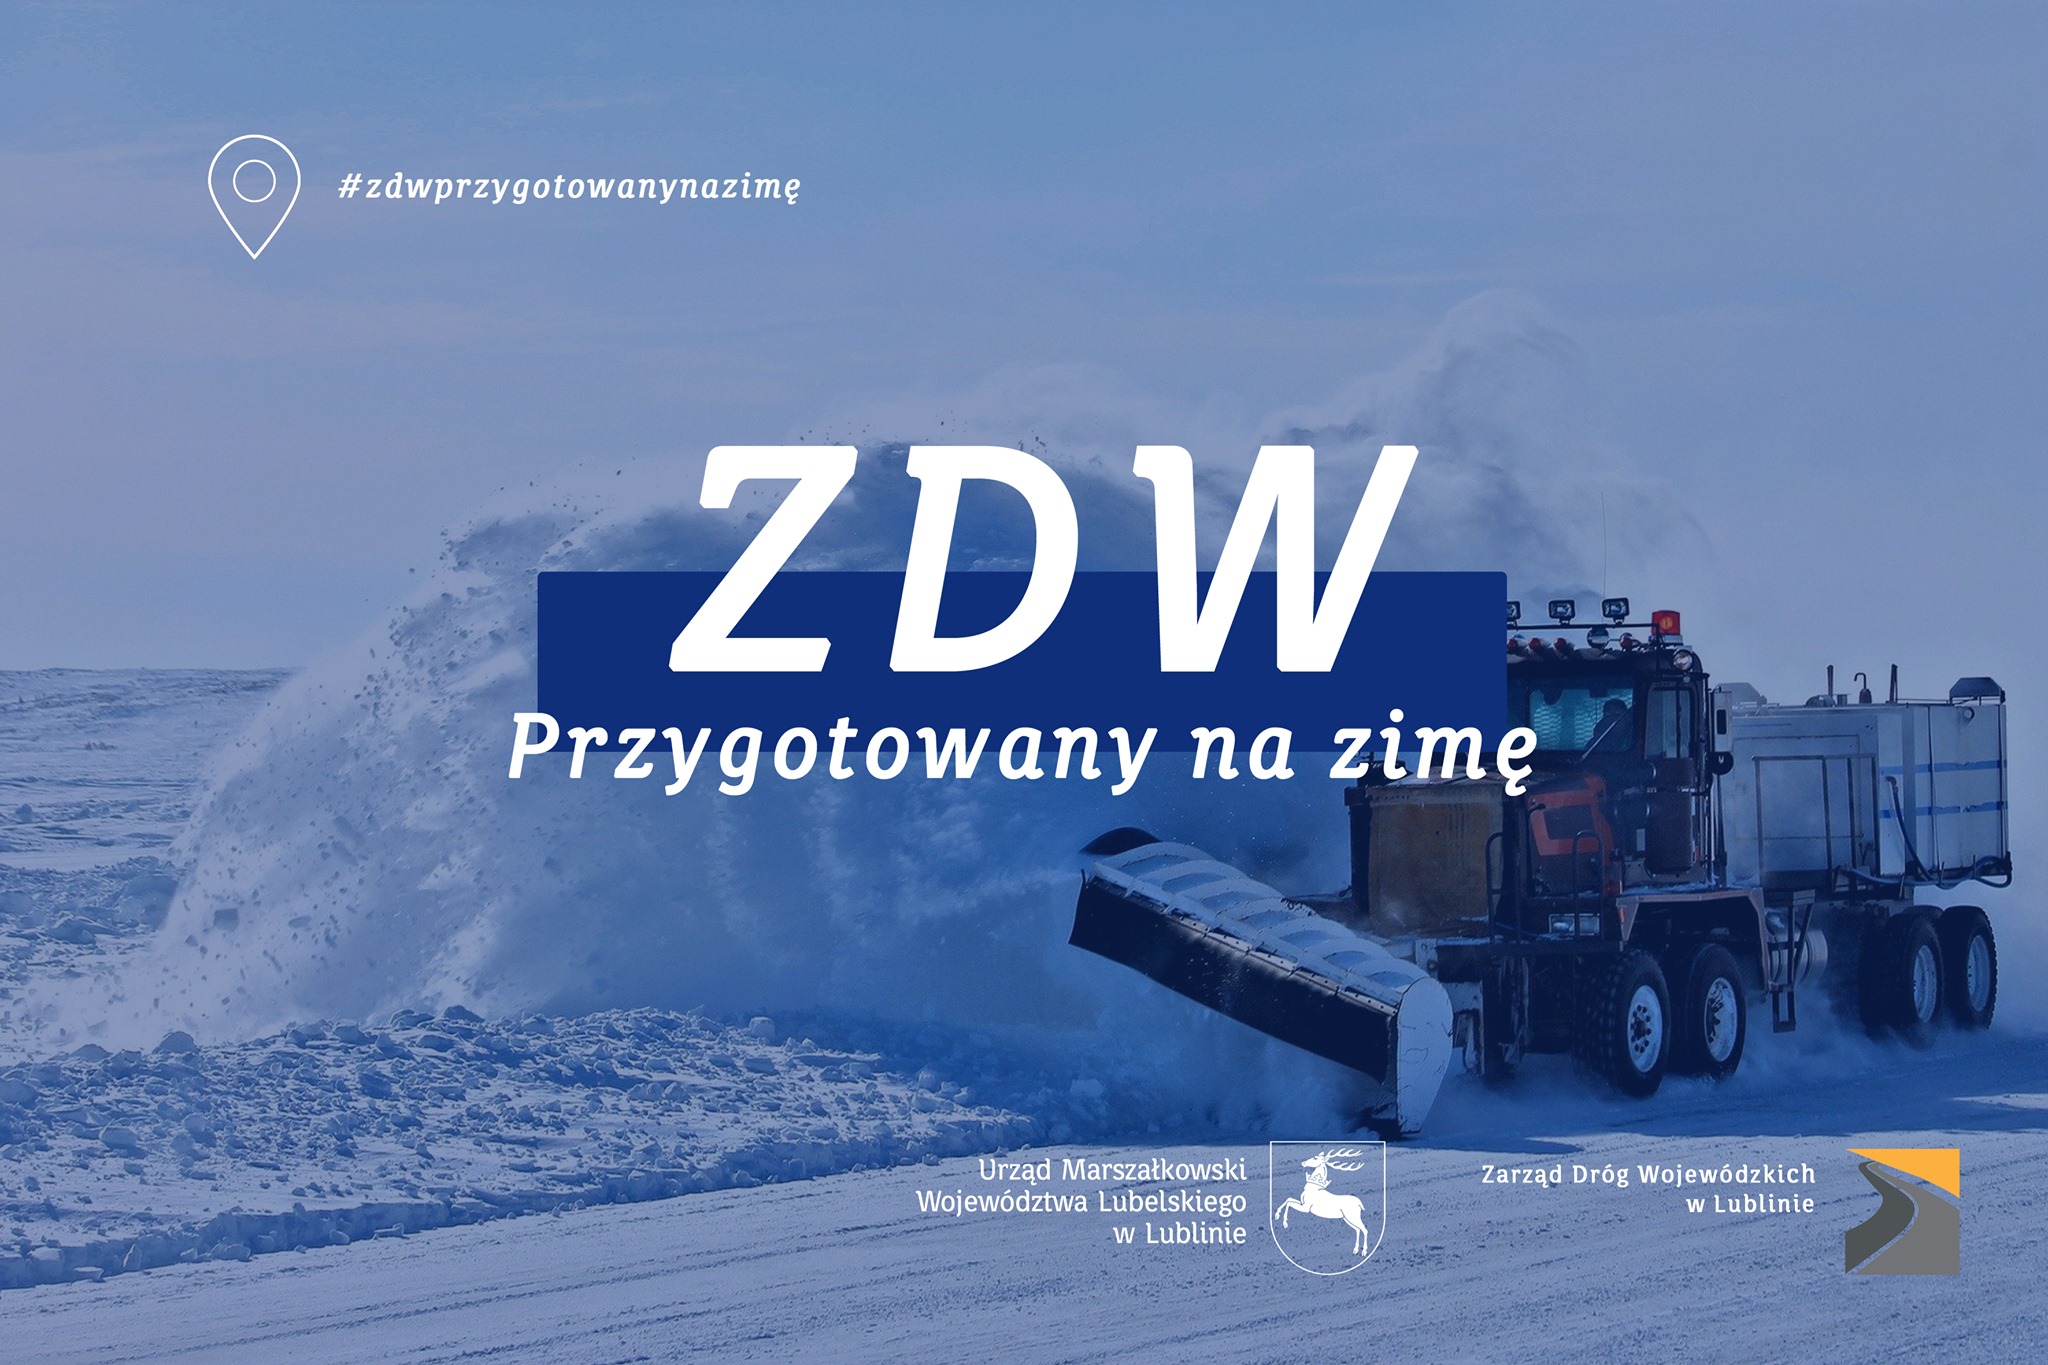 Zarząd Dróg Wojewódzkich w Lublinie przygotowany na zimę. Tony soli i sprzęt w gotowości - Zdjęcie główne